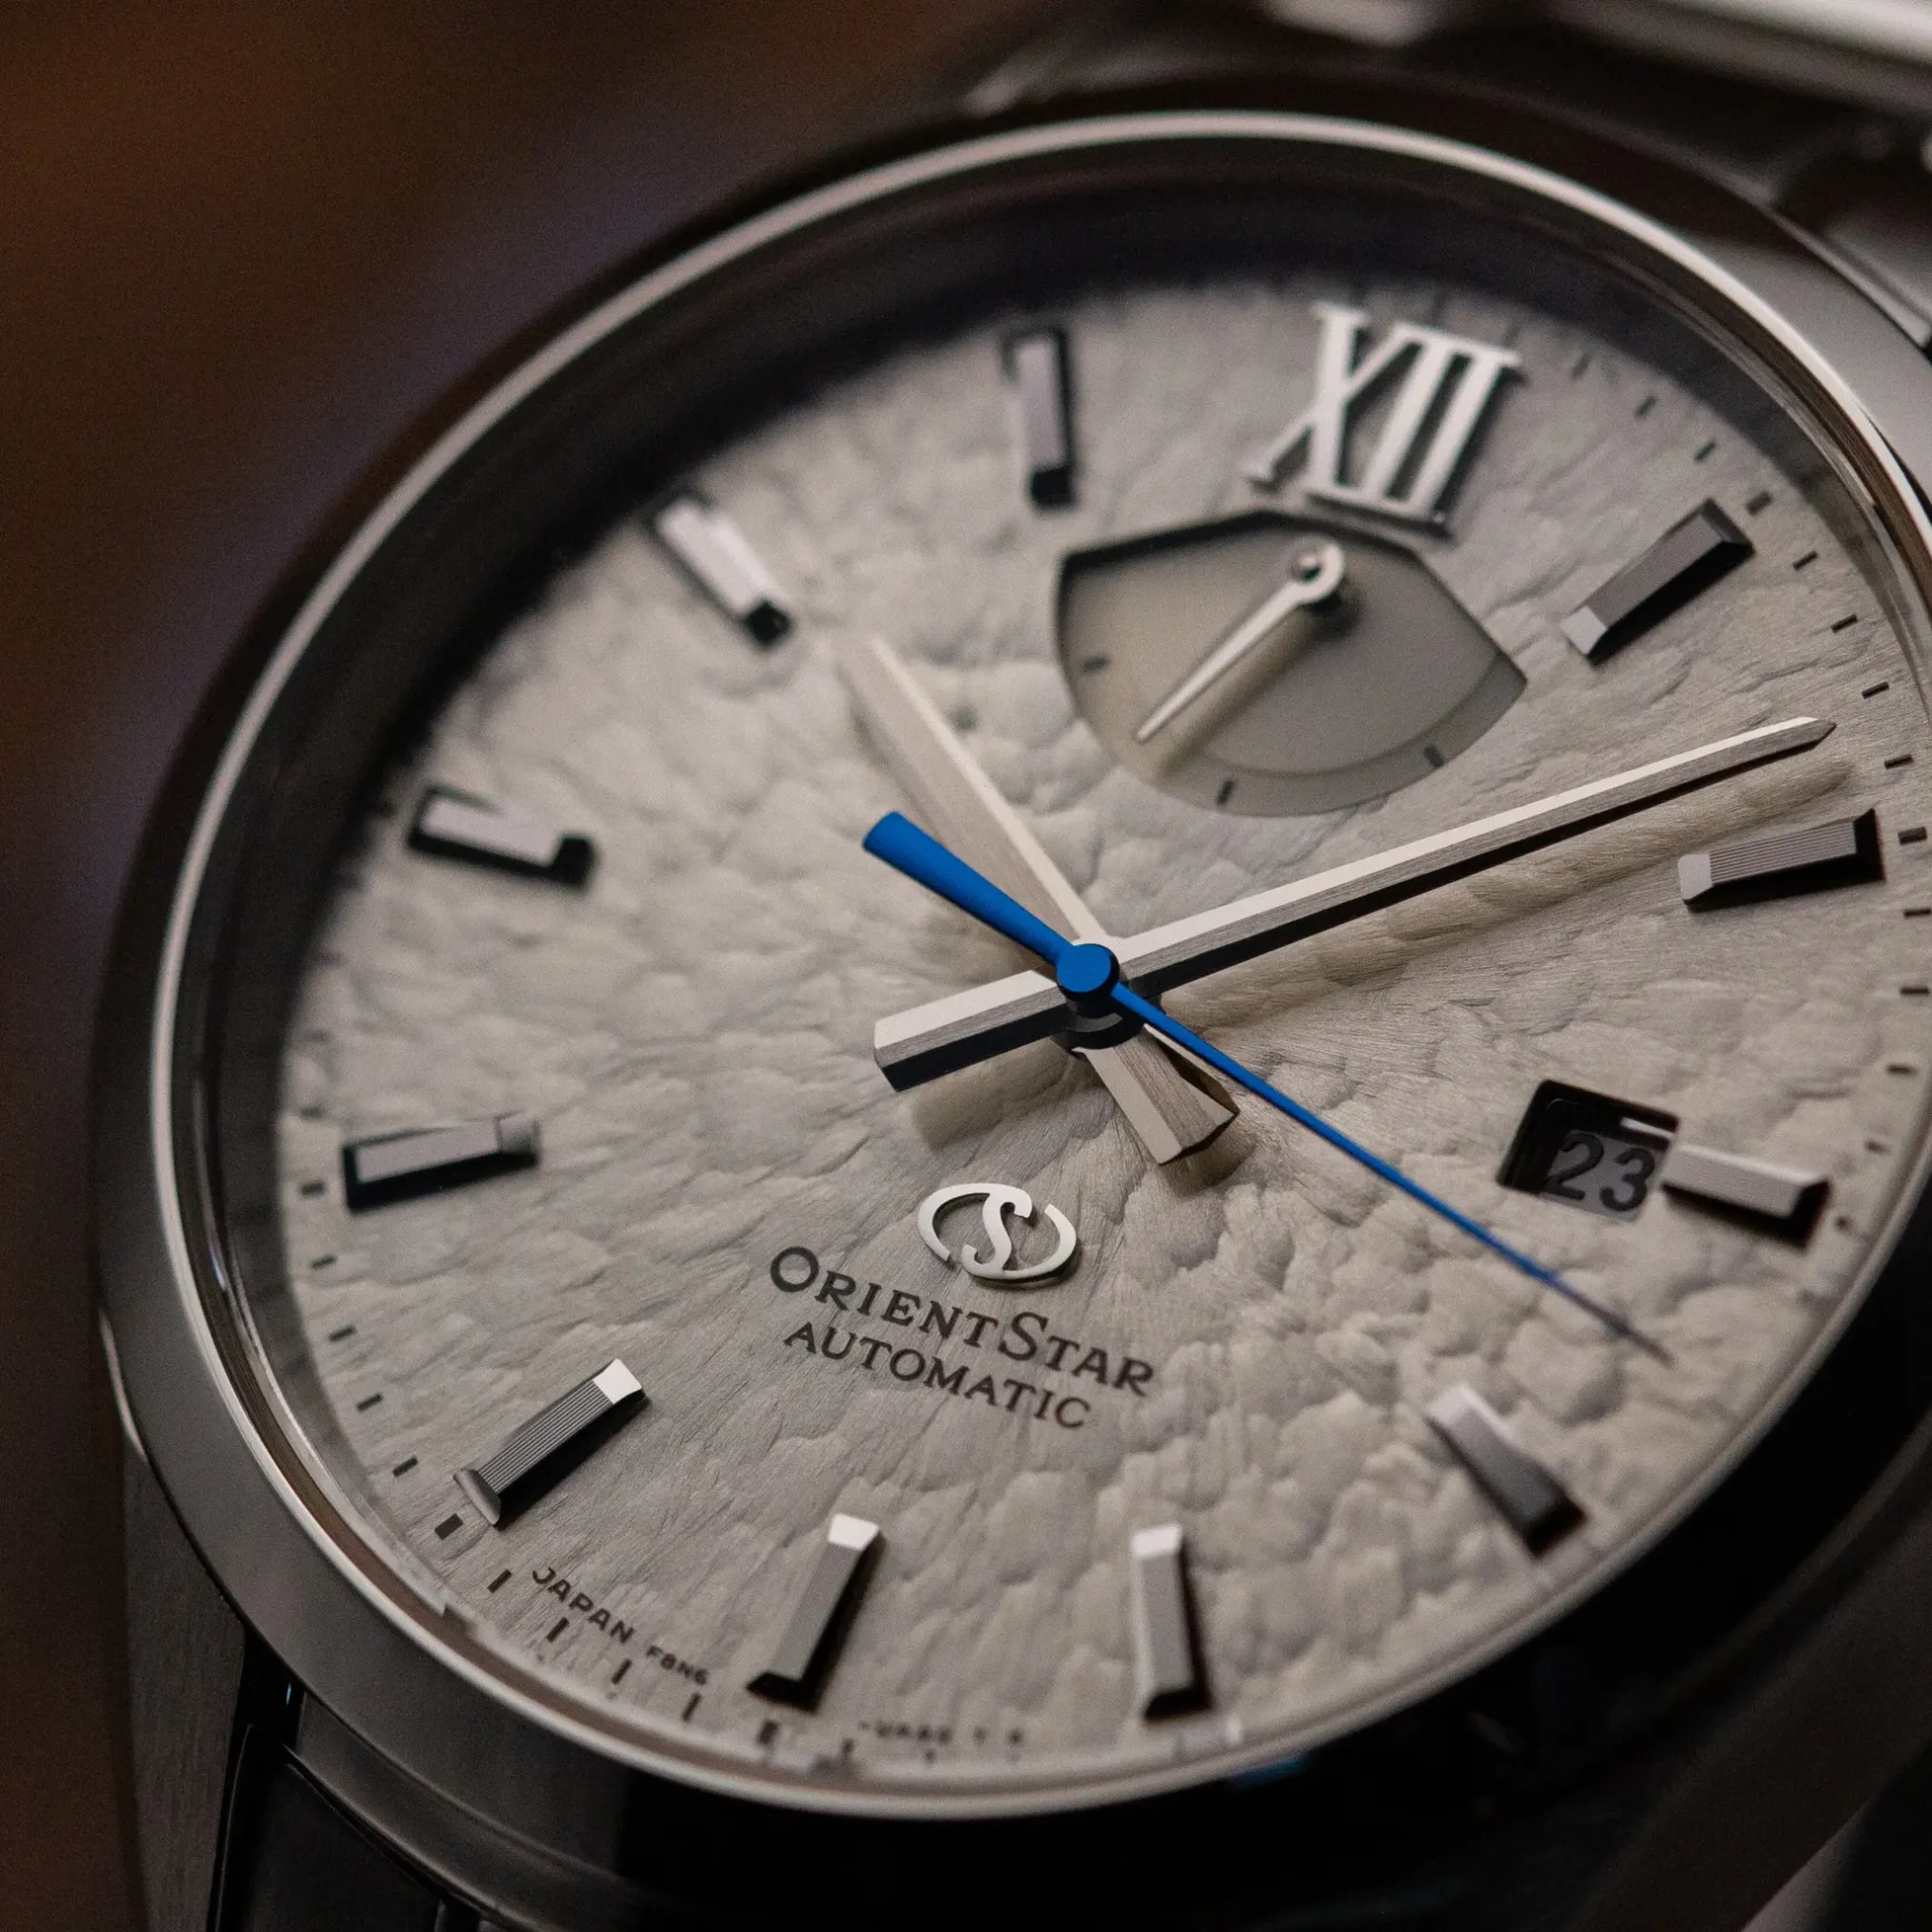 Đồng hồ Orient Star M34 F8 Date Limited Edition RK-BX0001S mặt số màu bạc. Dây đeo bằng thép và da. Thân vỏ bằng thép.